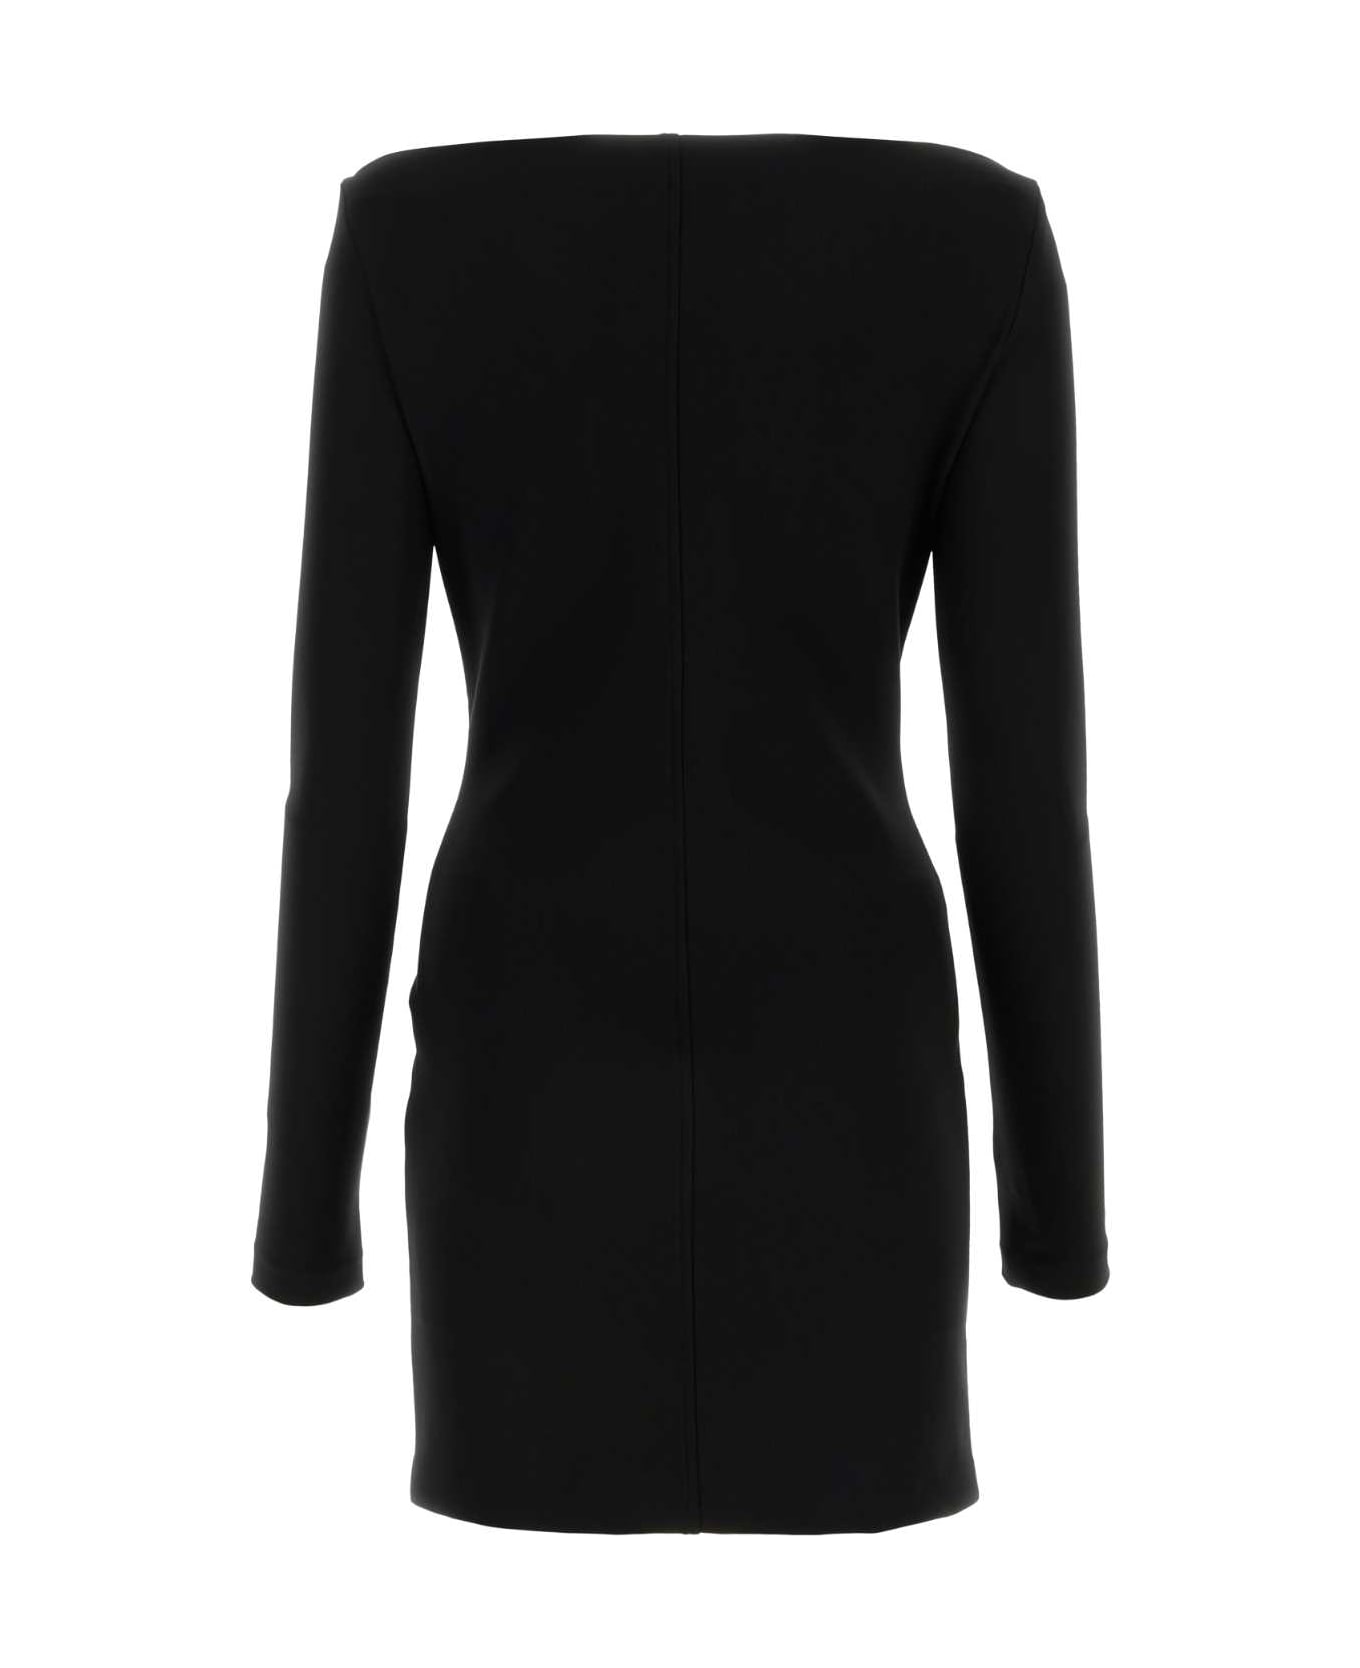 Blumarine Black Stretch Viscose Blend Mini Dress - NERO